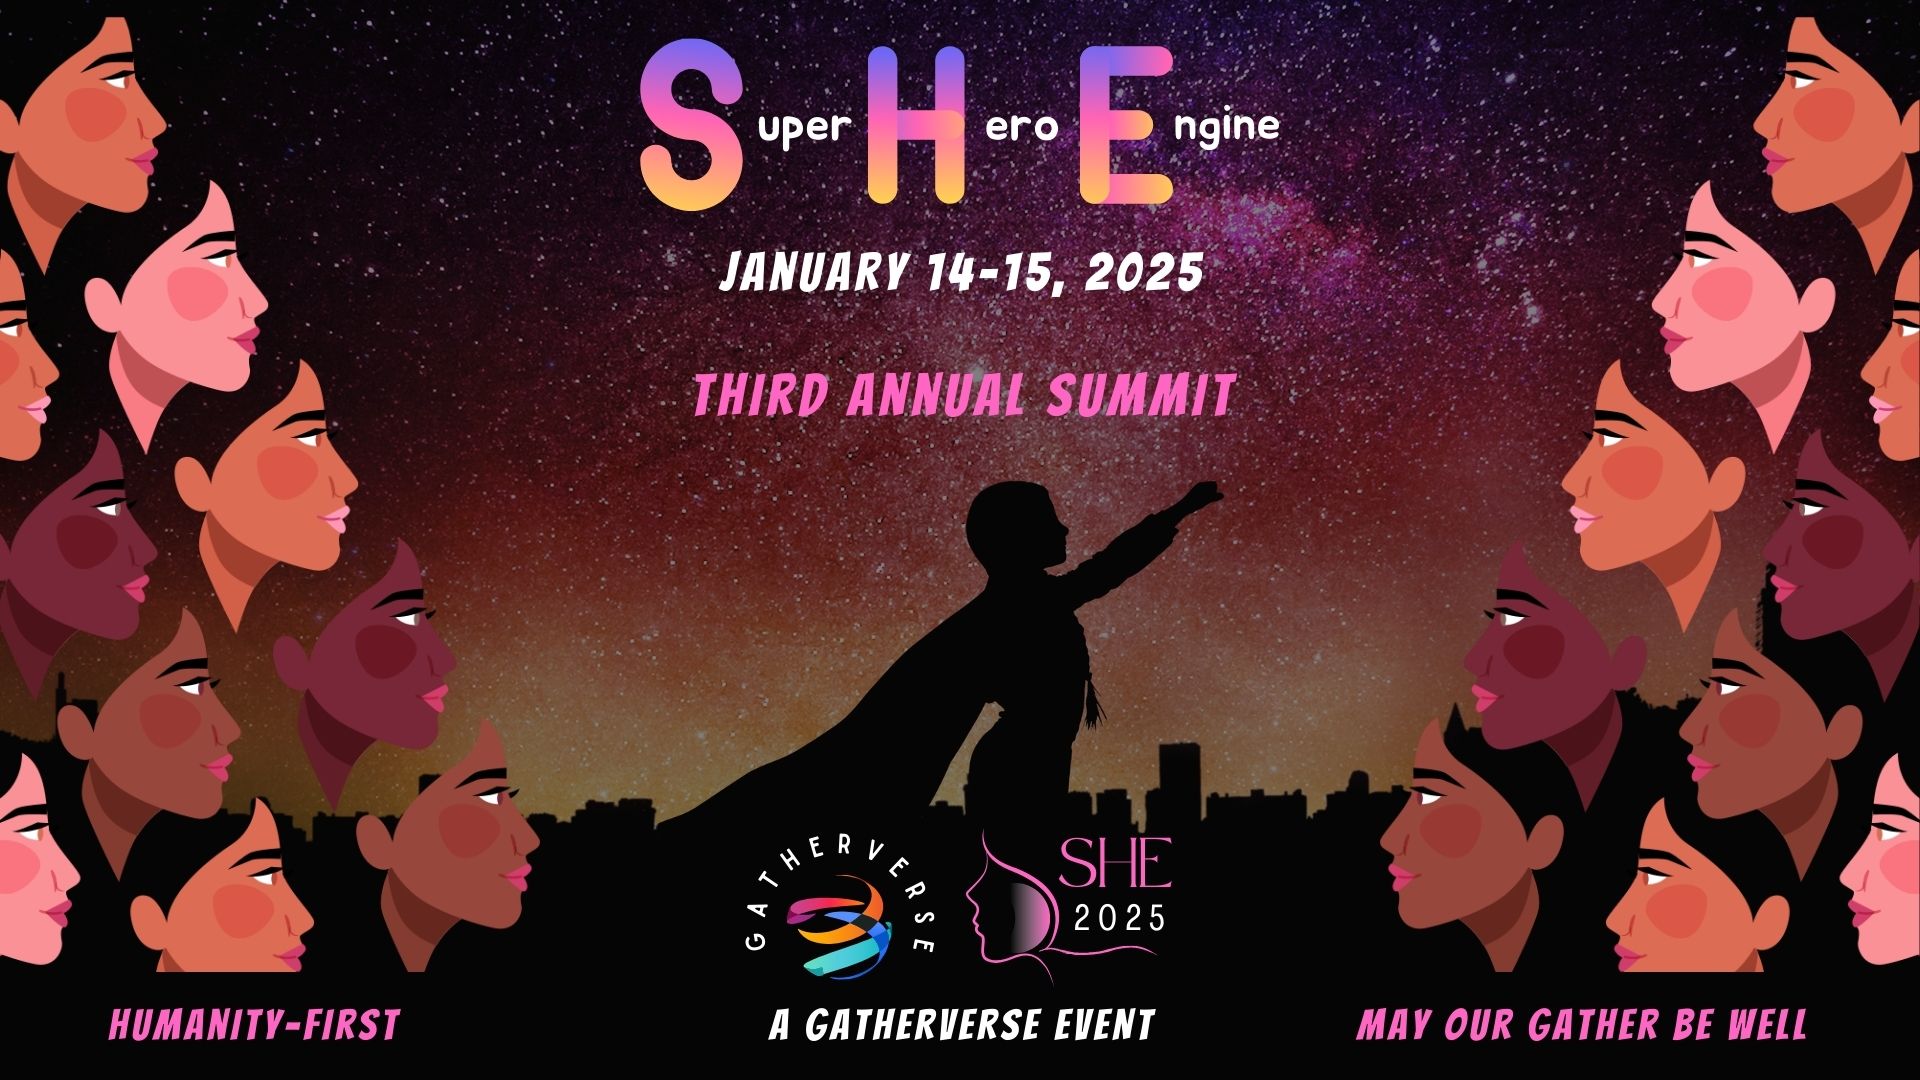 GatherVerse SHE Summit 2025